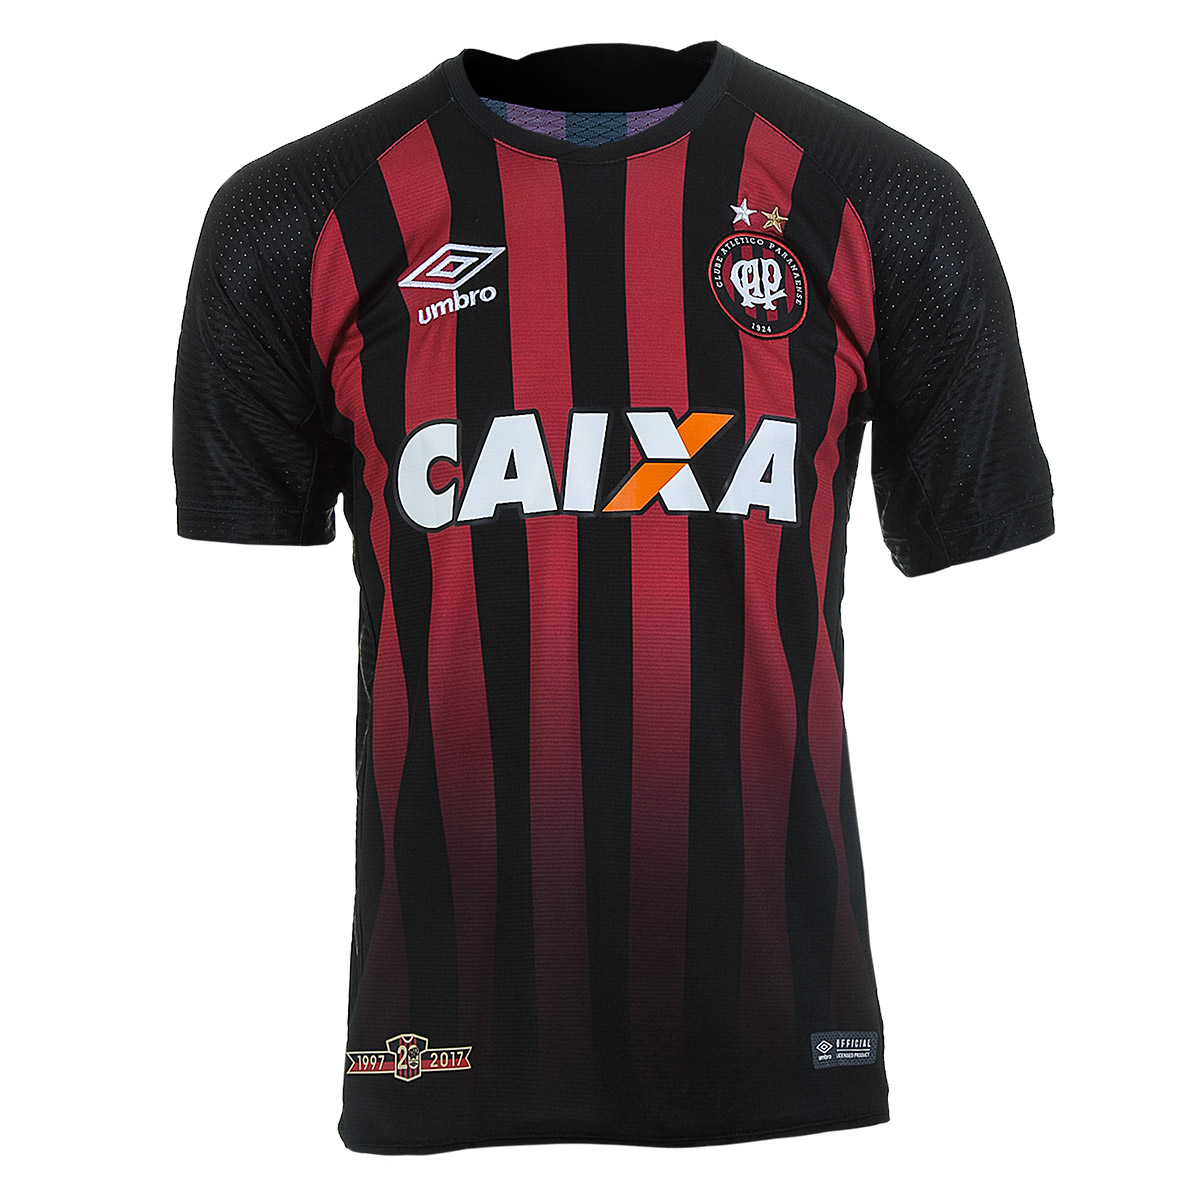 Camiseta Masc. Umbro Atletico Paranaense Of.1 2017 - Preto/Vermelho